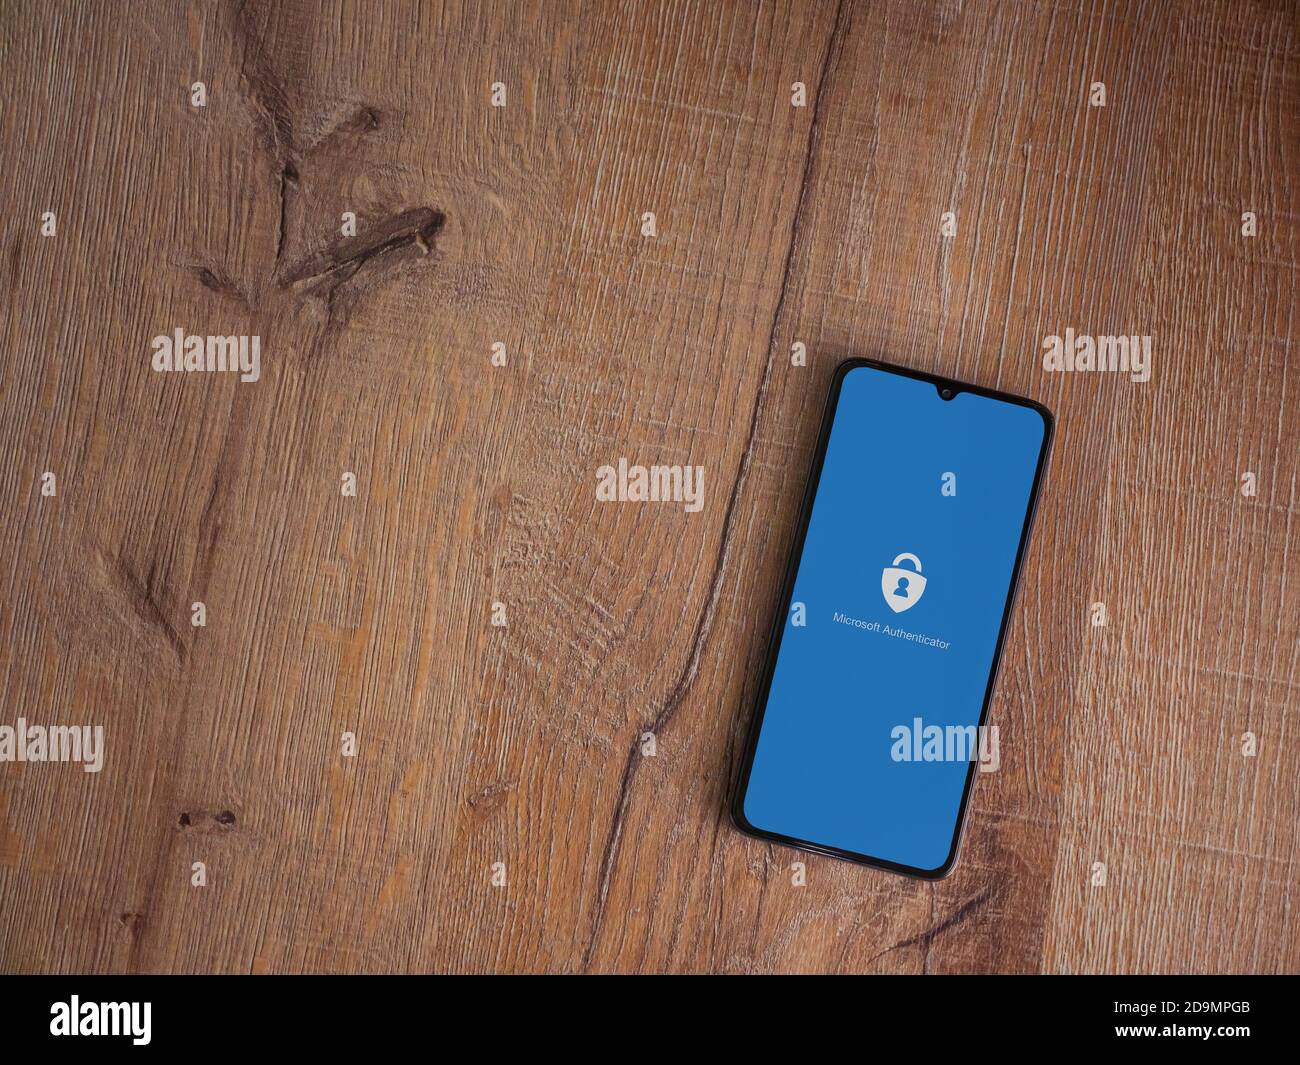 LOD, Israel - 8. Juli 2020: Microsoft Authenticator App Launch Screen mit Logo auf dem Display eines schwarzen mobilen Smartphones auf Holzhintergrund. Oben Stockfoto